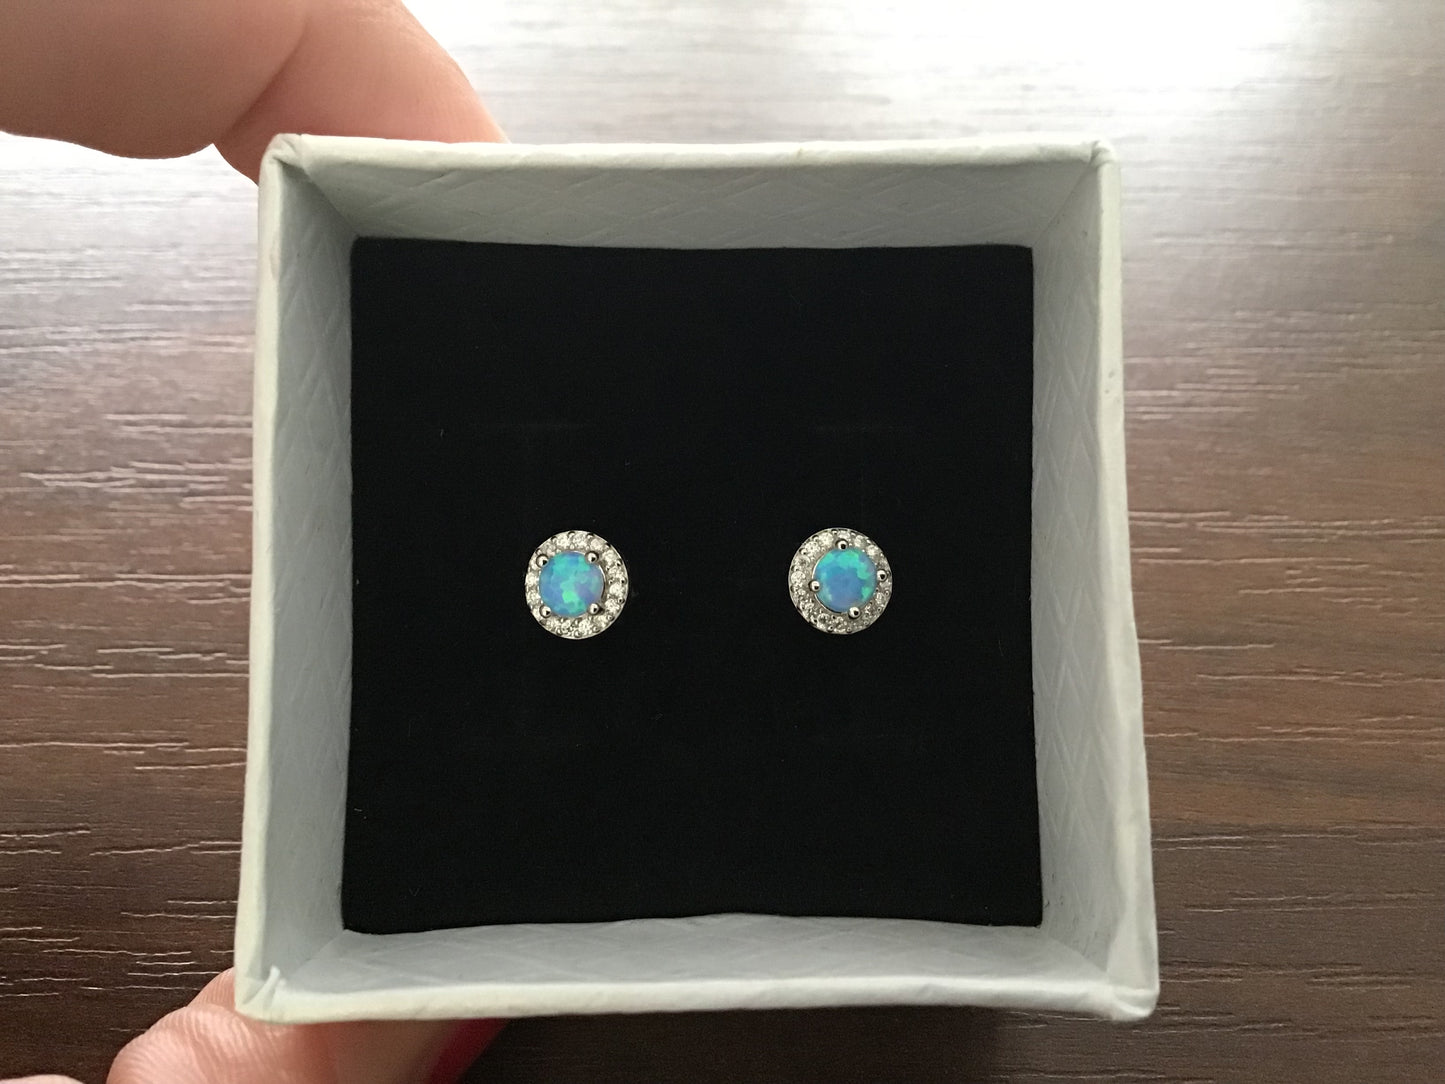 Genuine 925 Sterling Silver Blue Opal Pair of Stud Earrings, 6mm, Gorgeous